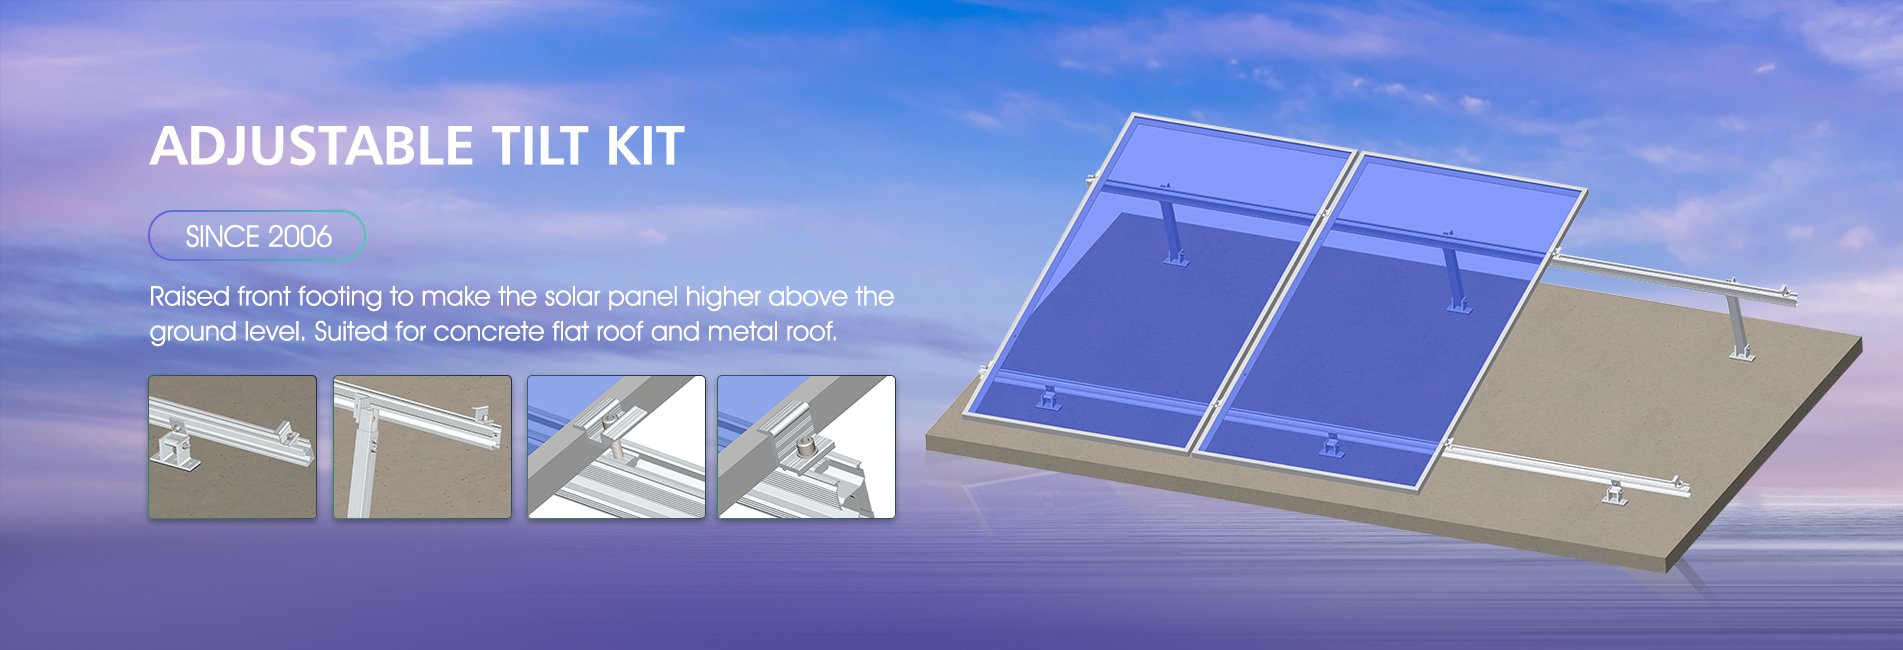 Adjustable tilt kit